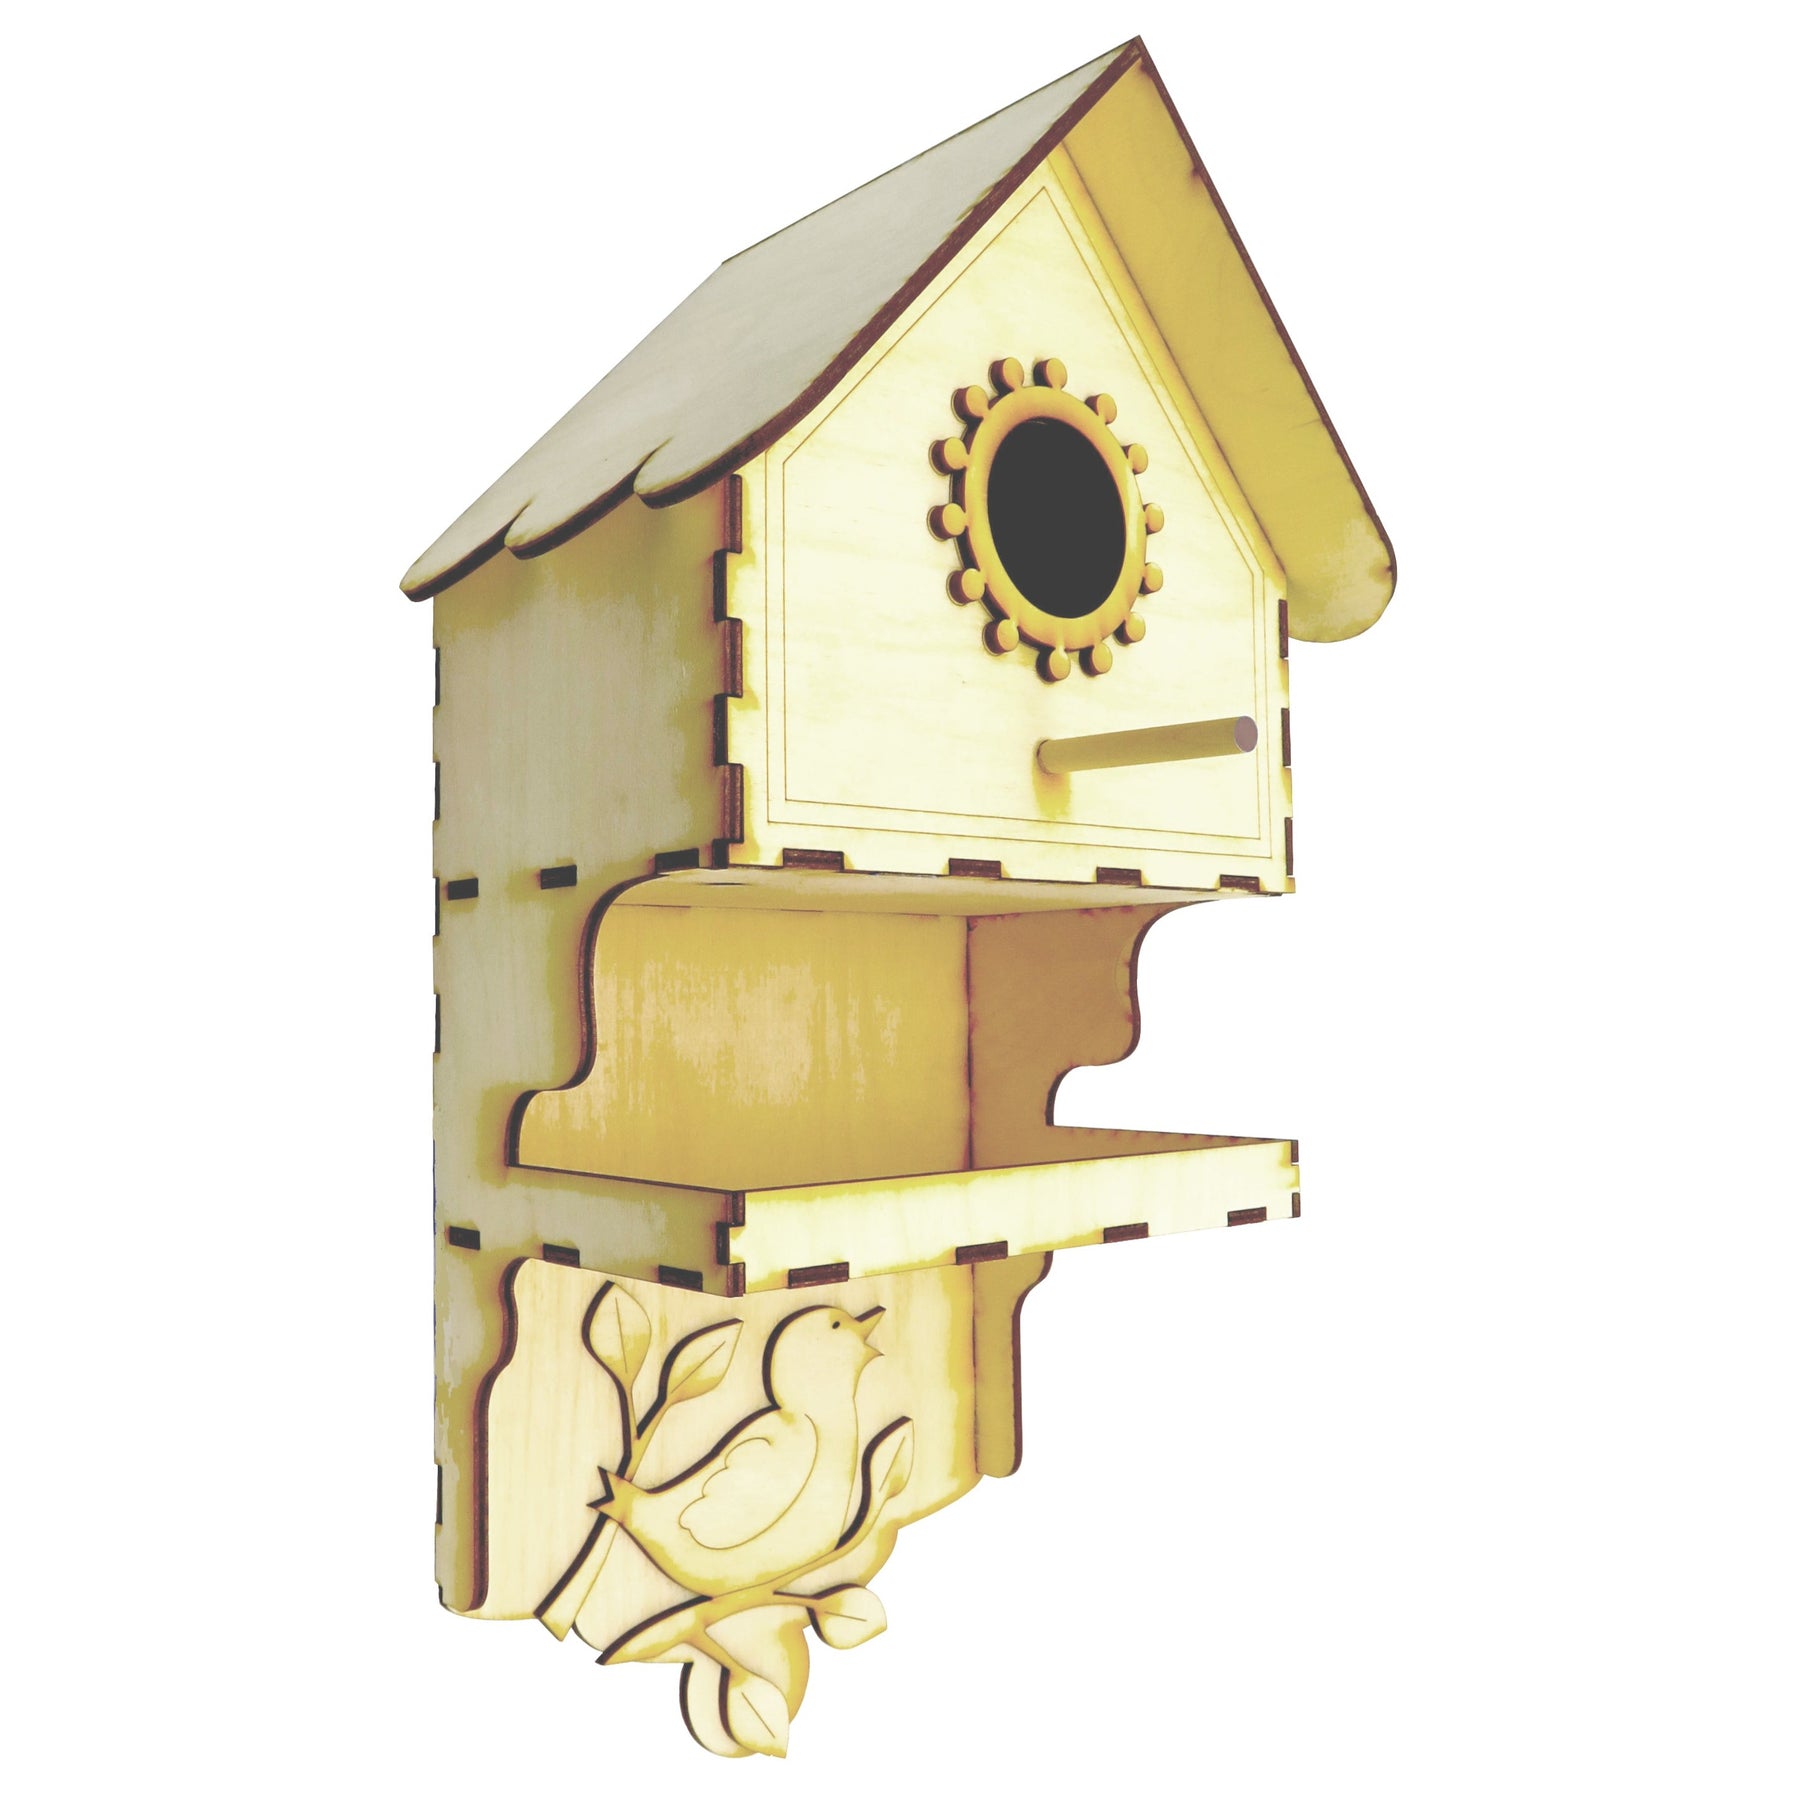 Little Birdie Birdhouse Building Kit